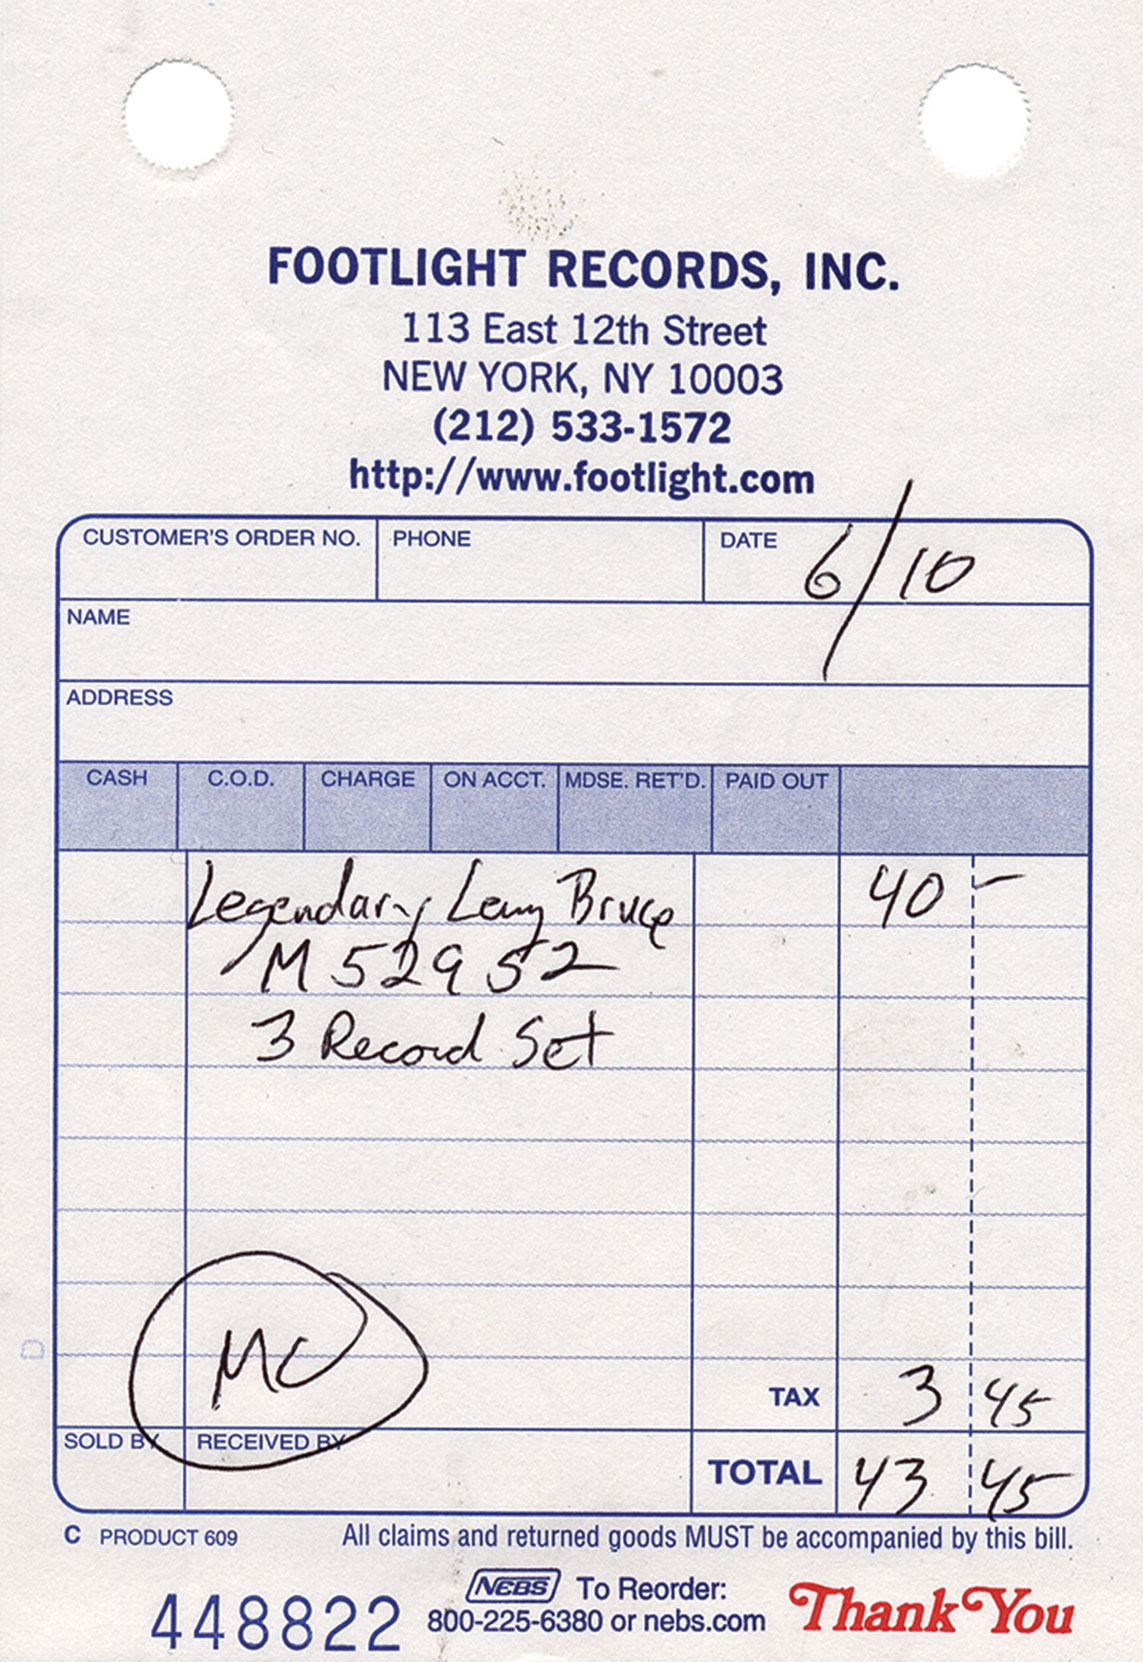 Footlight Records receipt, signed “Legendary Lenny Bruce.”